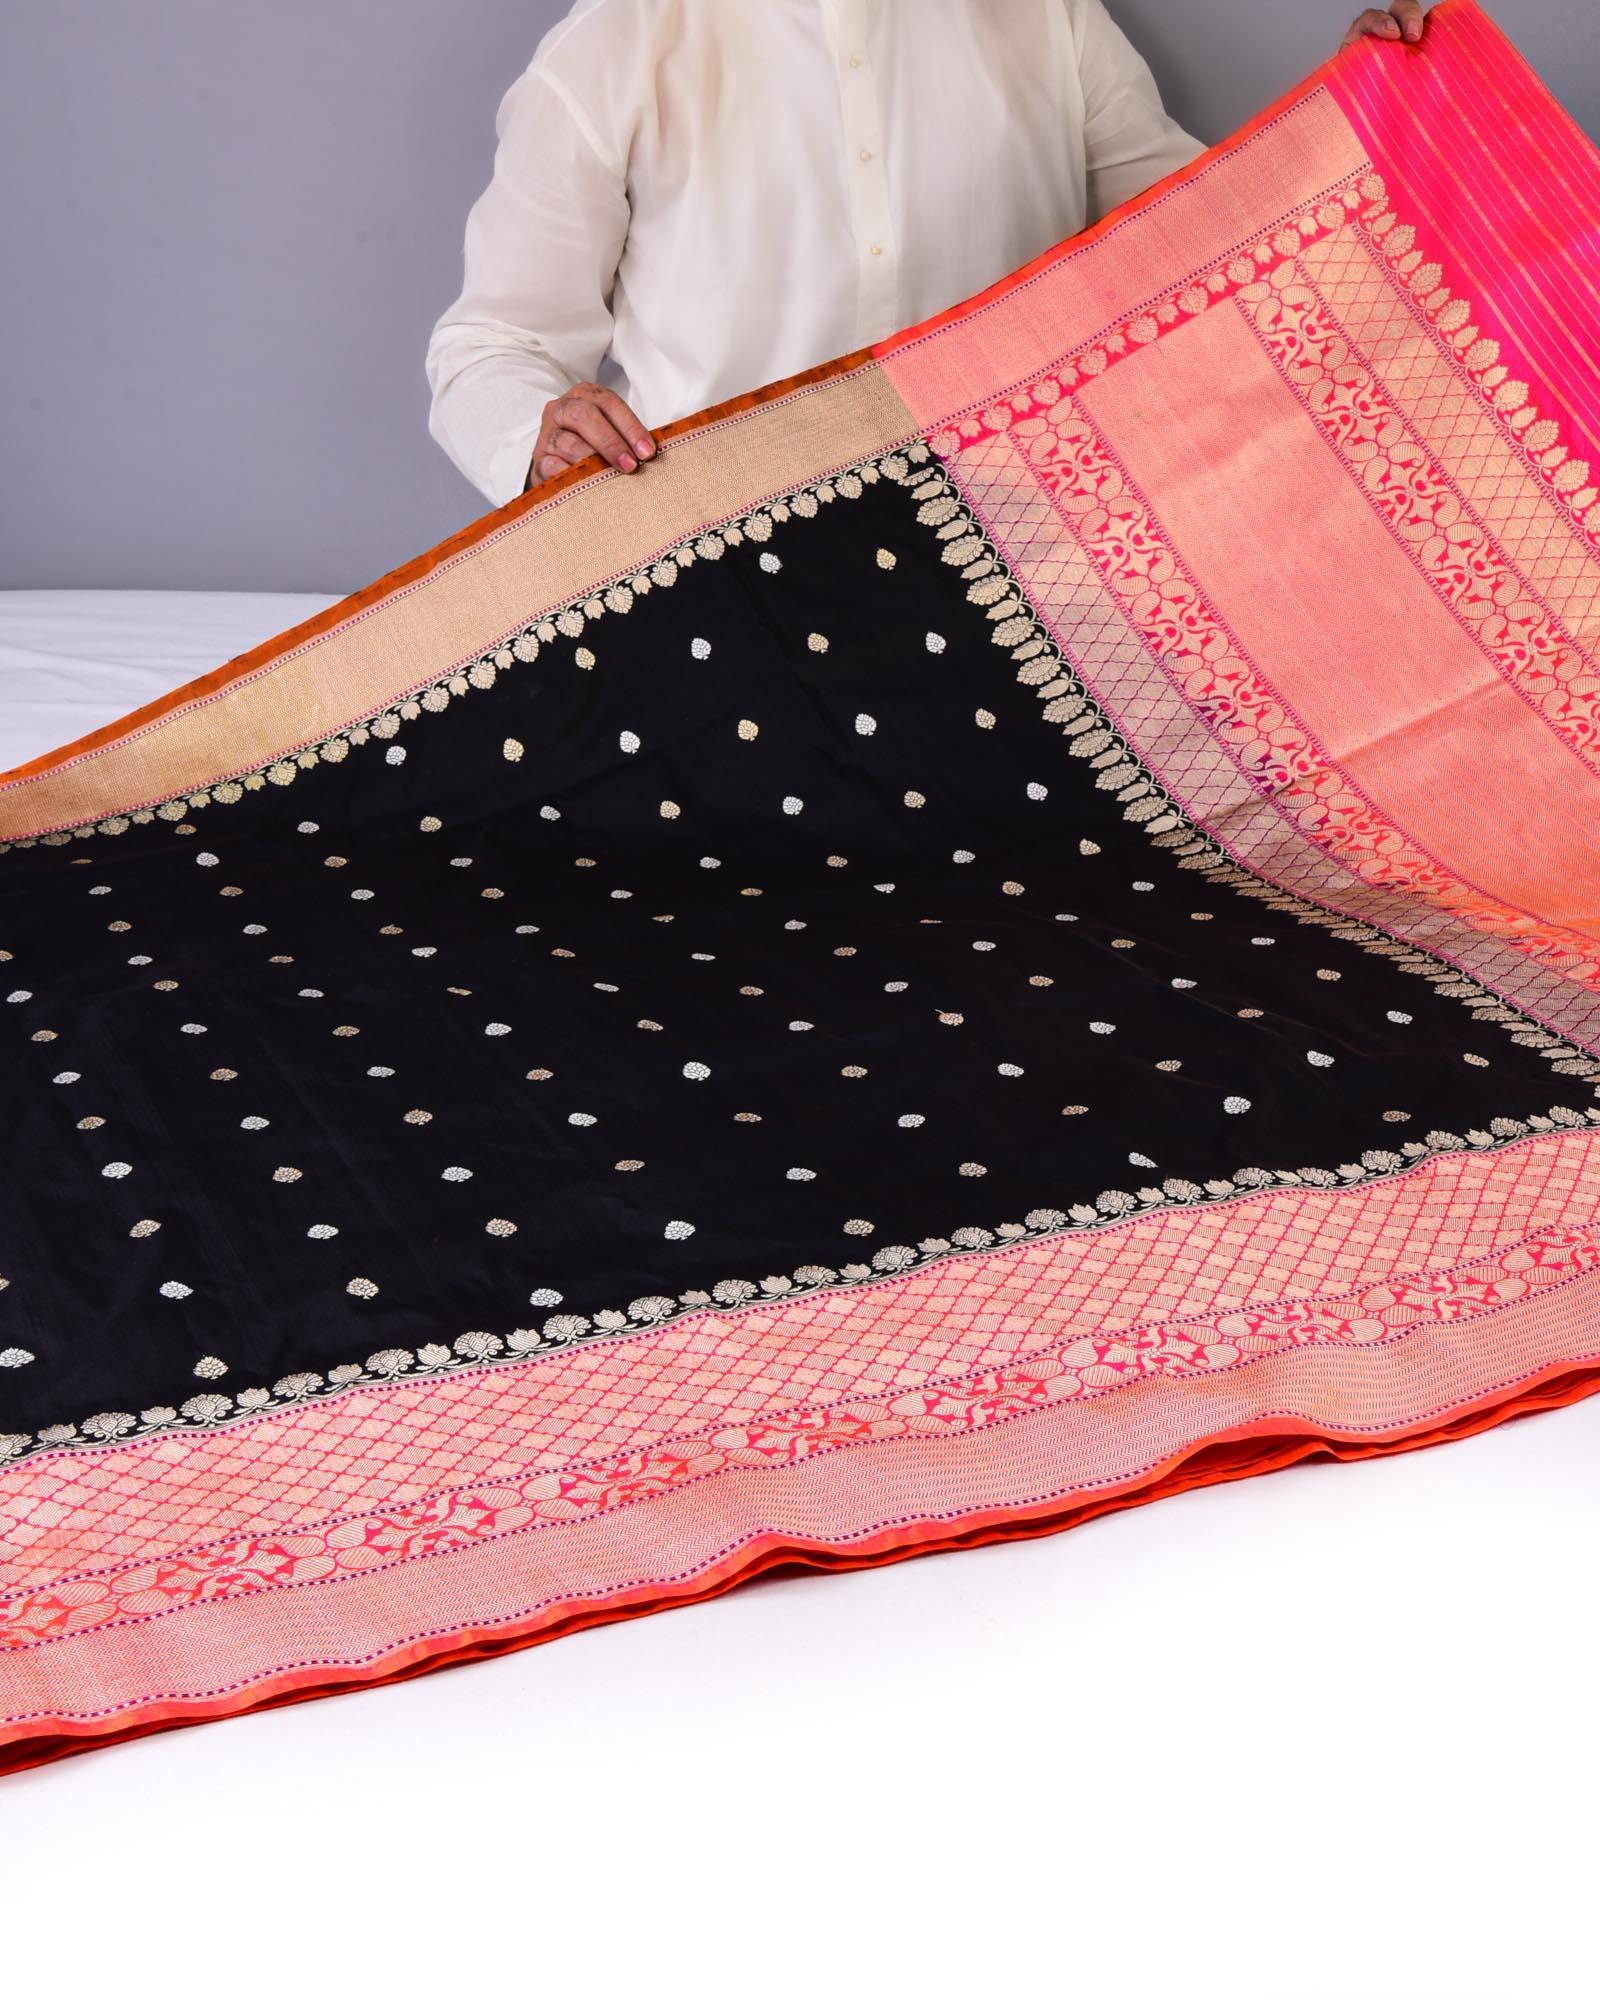 Black Banarasi Kadhuan Brocade Handwoven Katan Silk Saree with Pink Kadiyal Border Pallu - By HolyWeaves, Benares